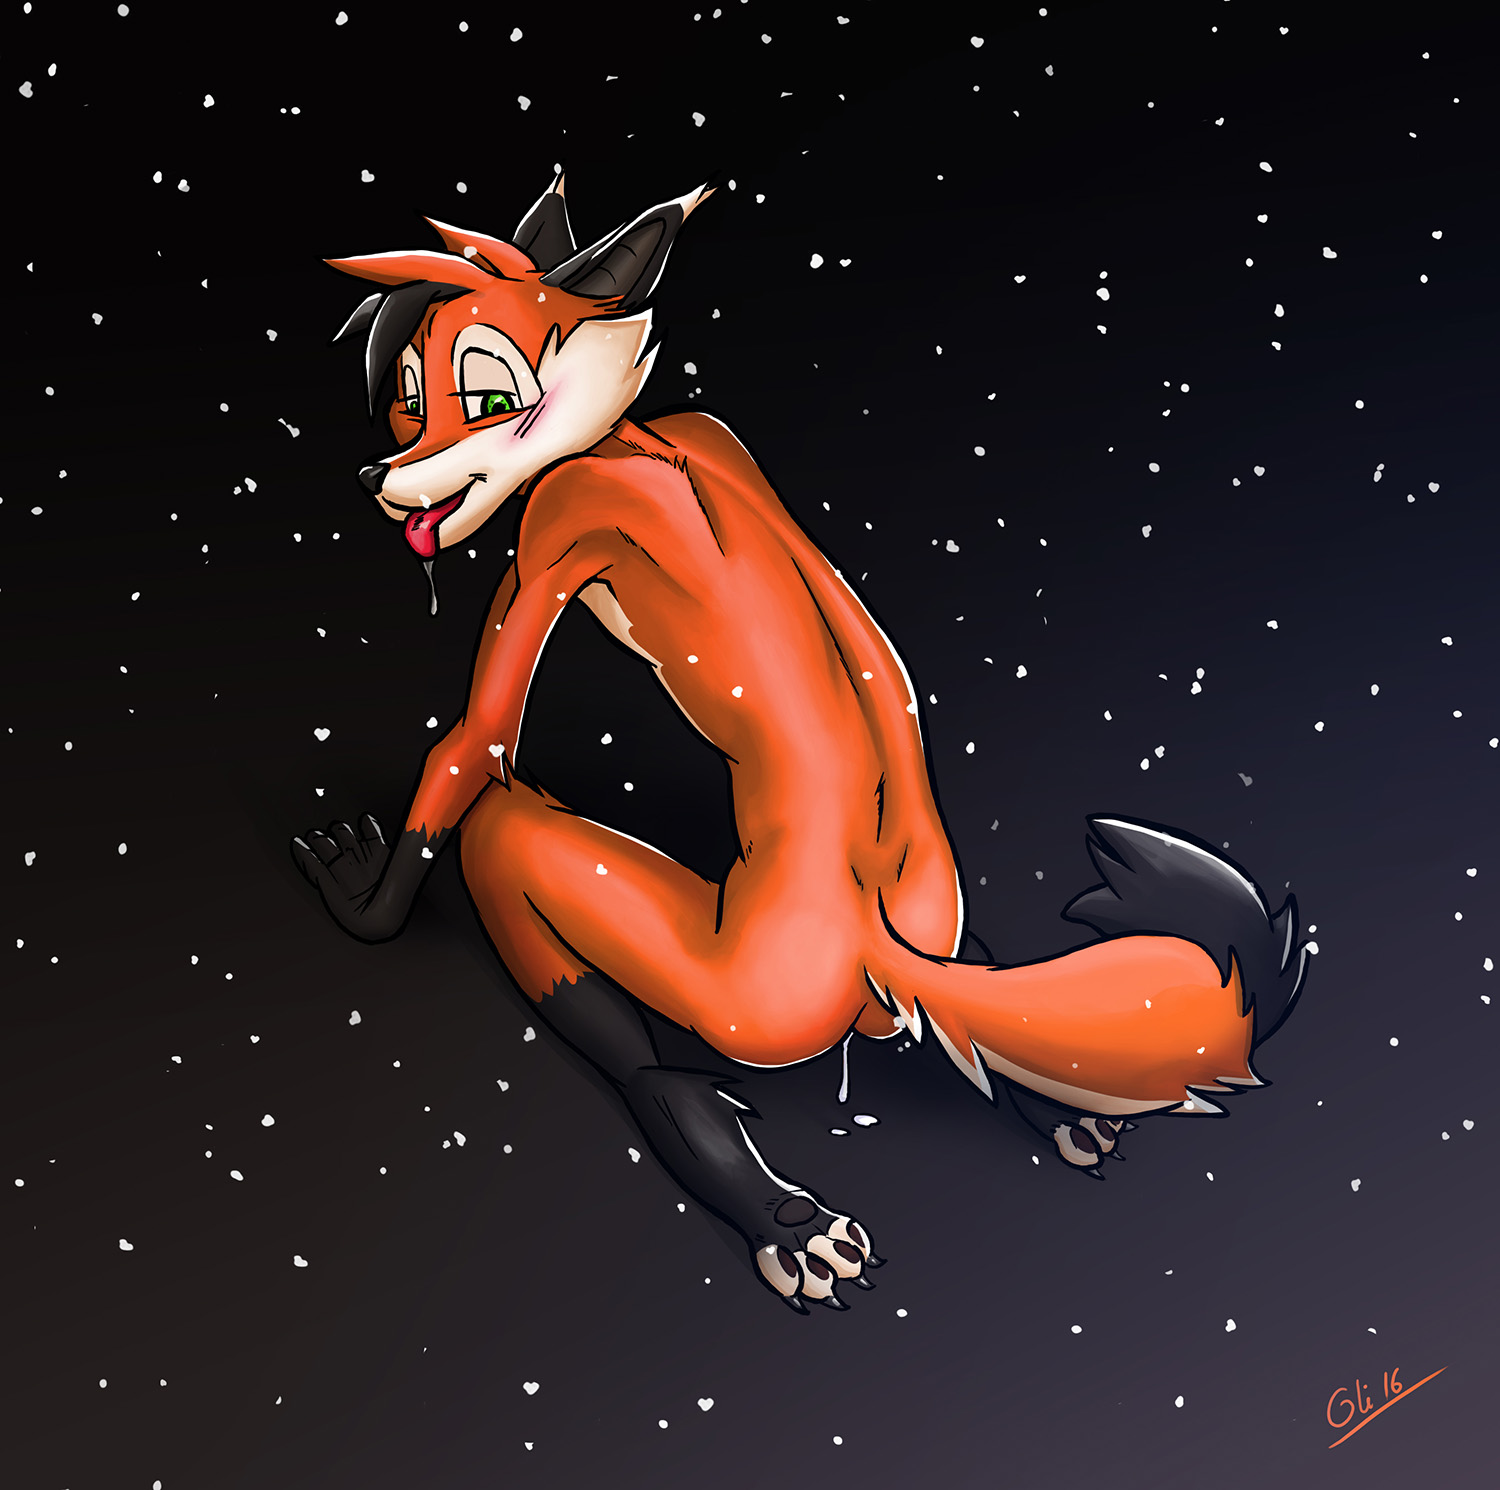 Fox in Winter